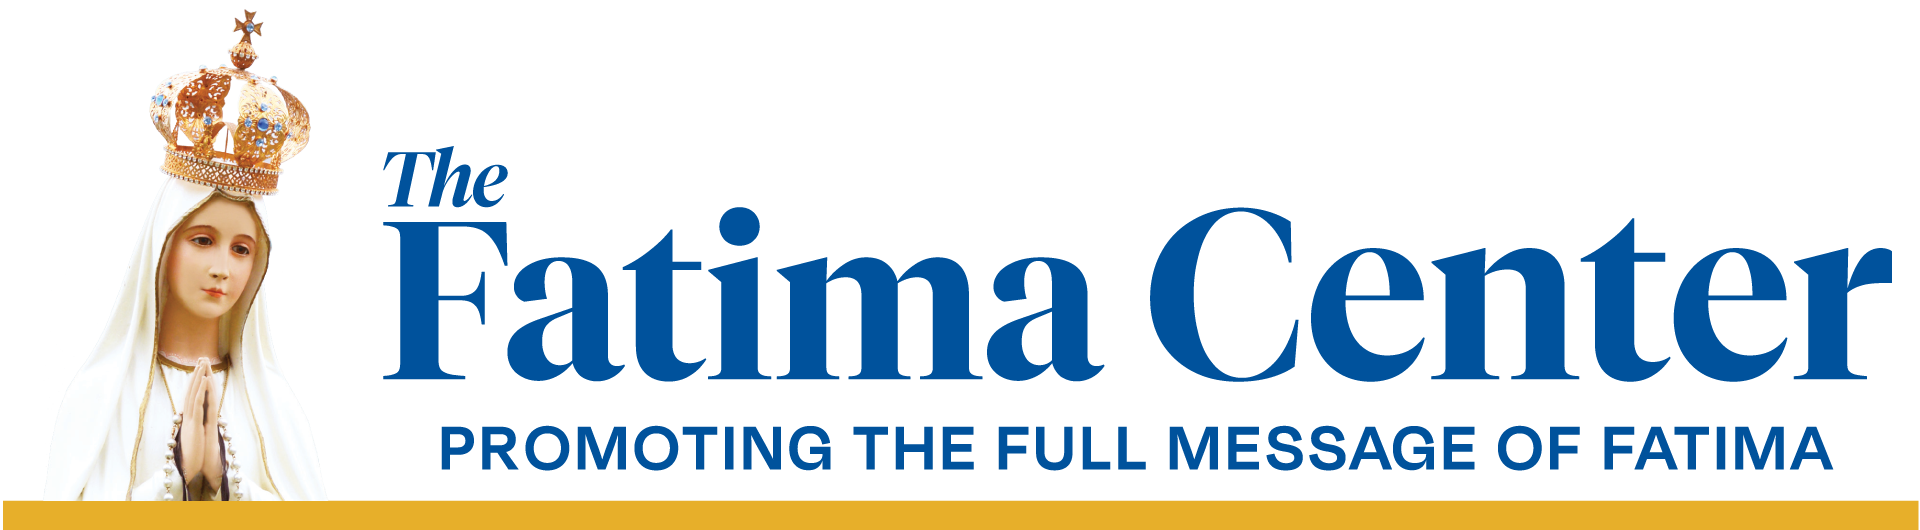 The Fatima Center